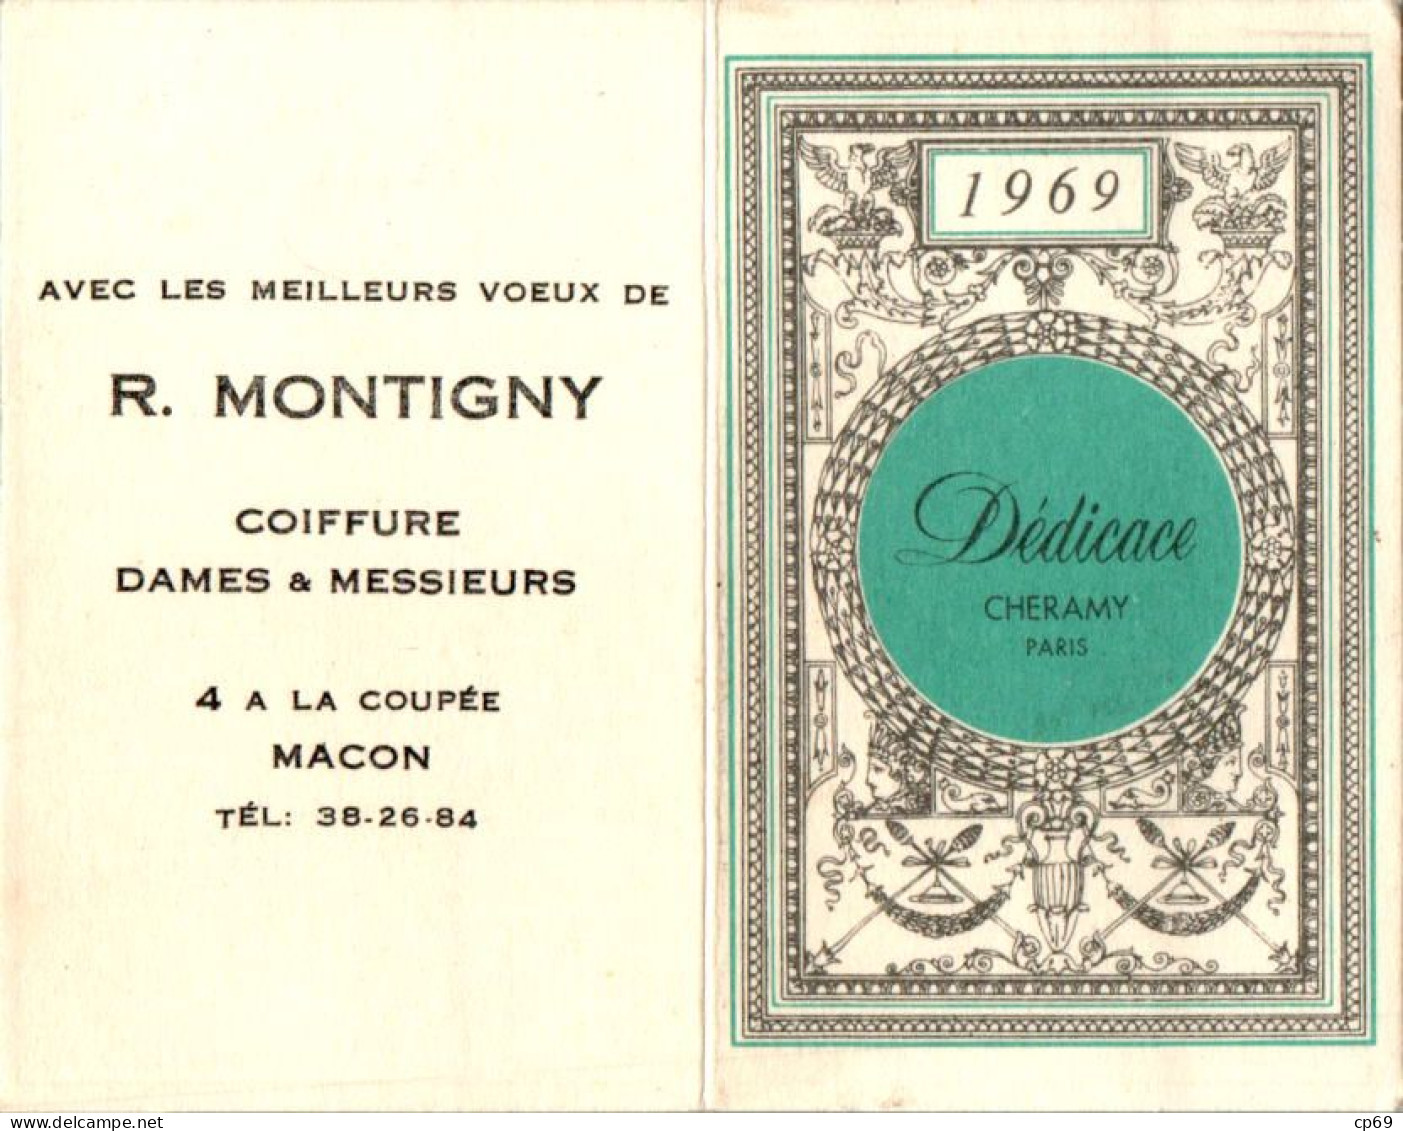 Calendrier De Poche 1969 Parfum Dédicace Cheramy à Paris En TB.Etat - Klein Formaat: 1961-70